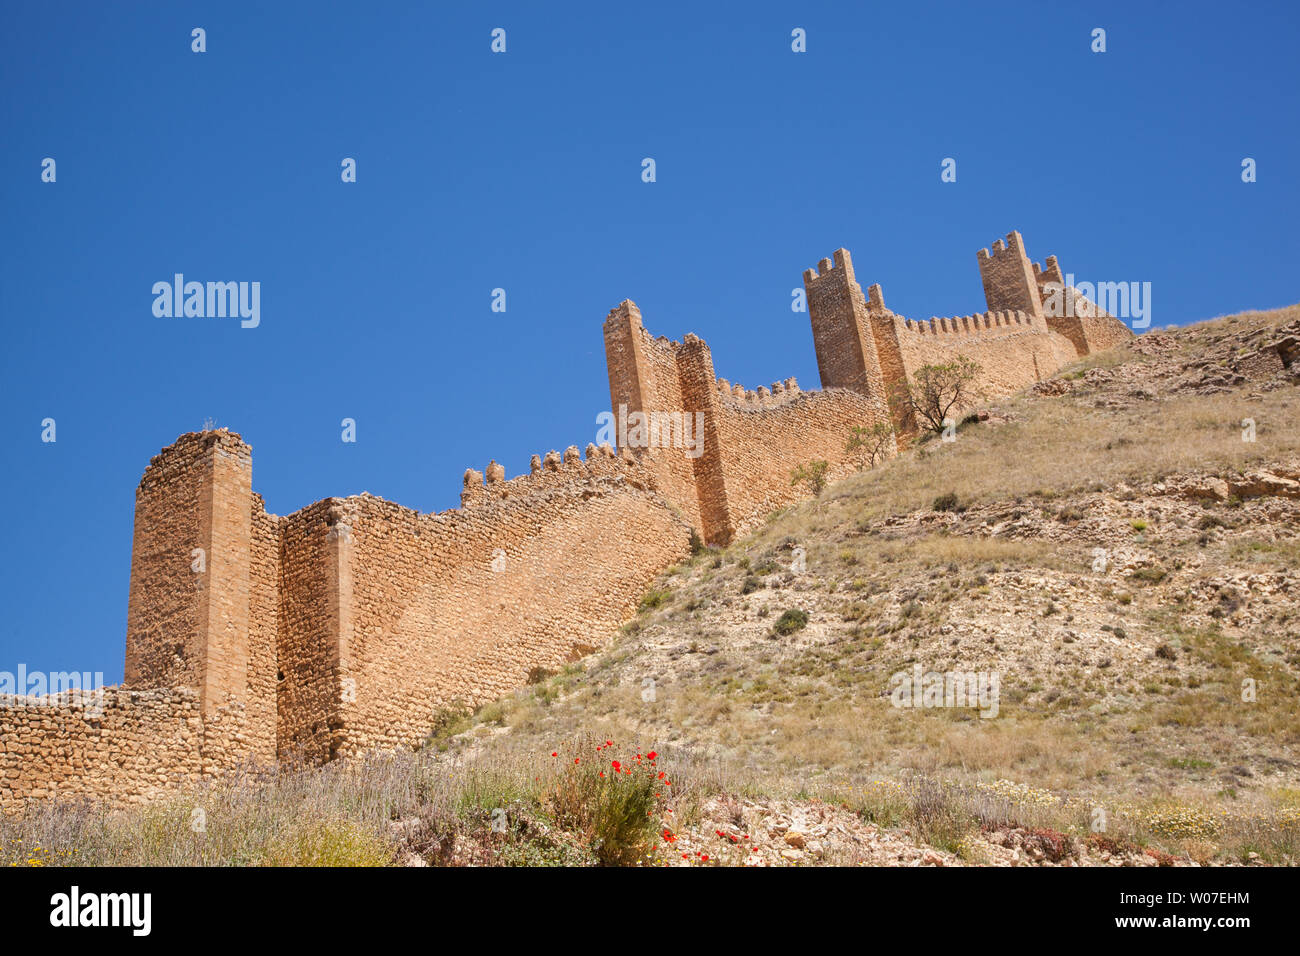 Vue sur la cité médiévale fortifiée / murs de ville dans la ville d'Albarracin mauresque espagnol dans les Montes Universales Aragon Espagne Banque D'Images